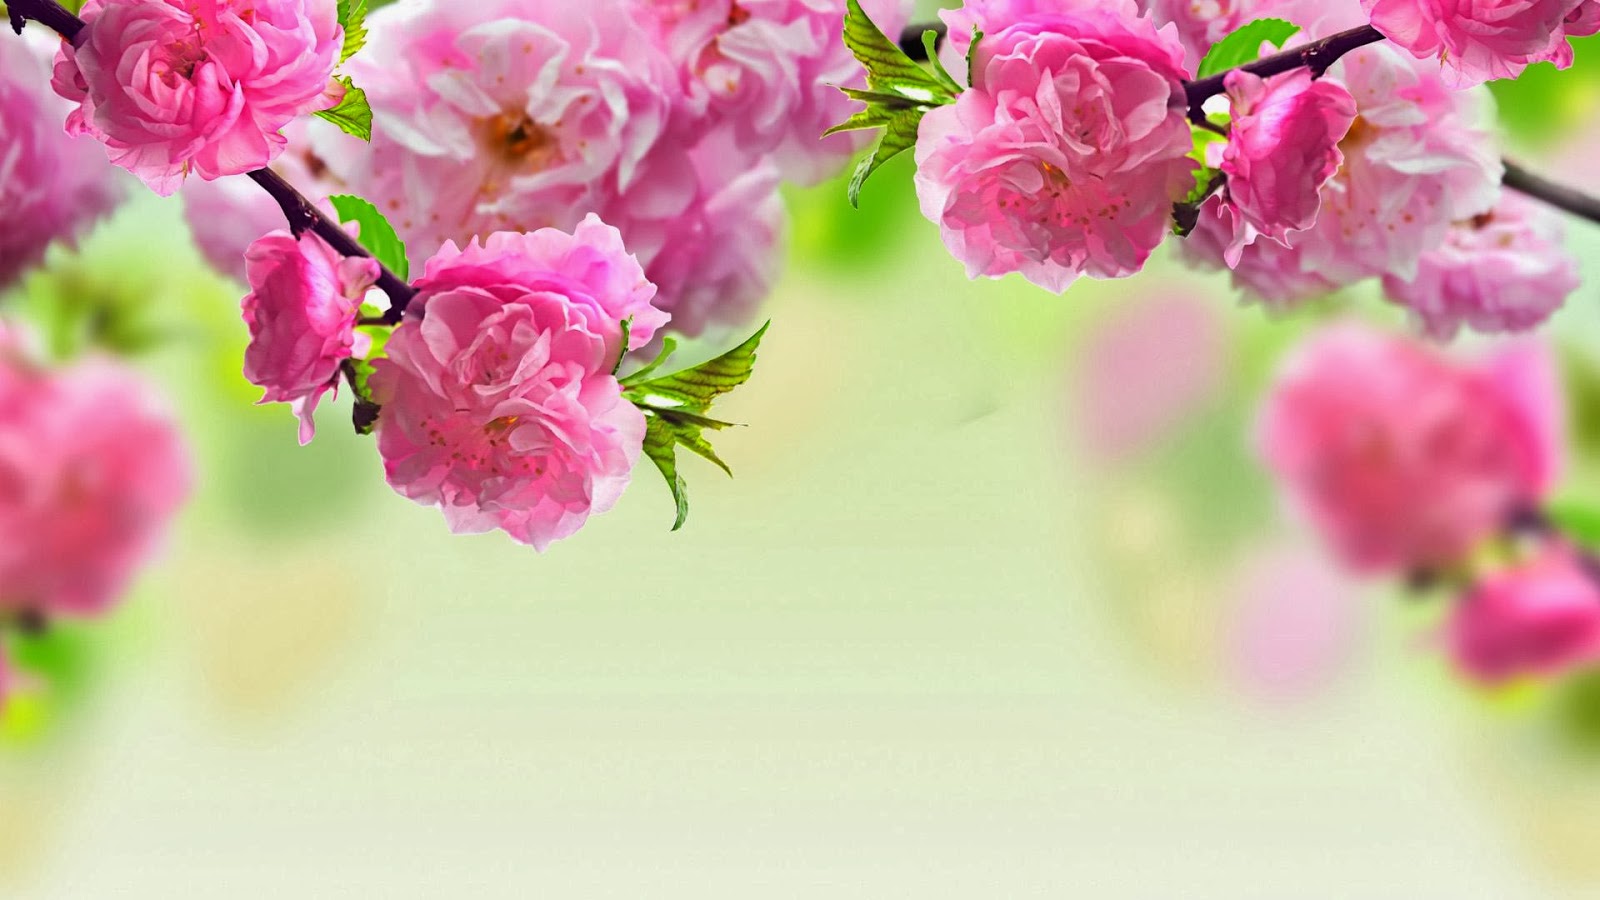 fonds d'écran fleur hd 1080p,fleur,rose,plante,printemps,pétale